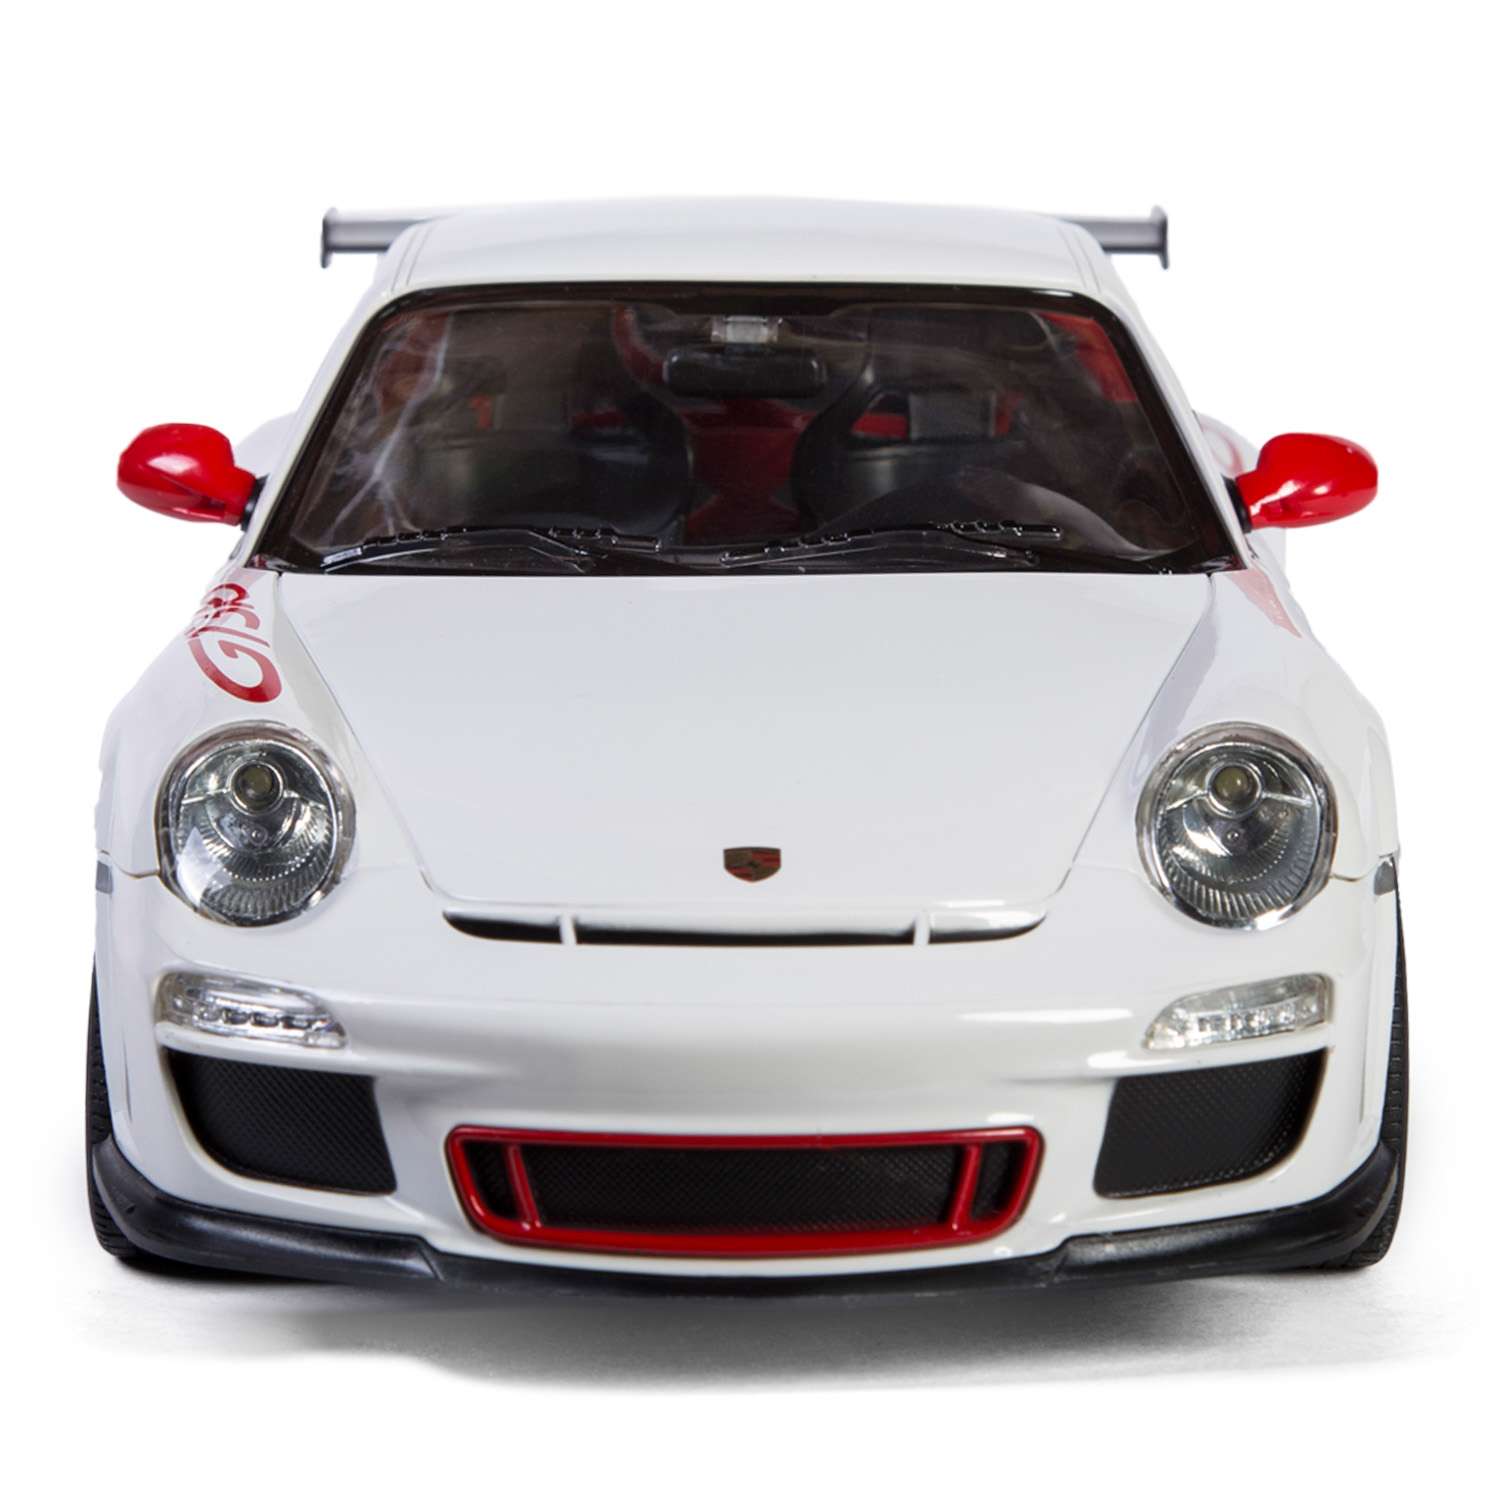 Машинка р/у Rastar Porsche GT3 1:14 белая - фото 7